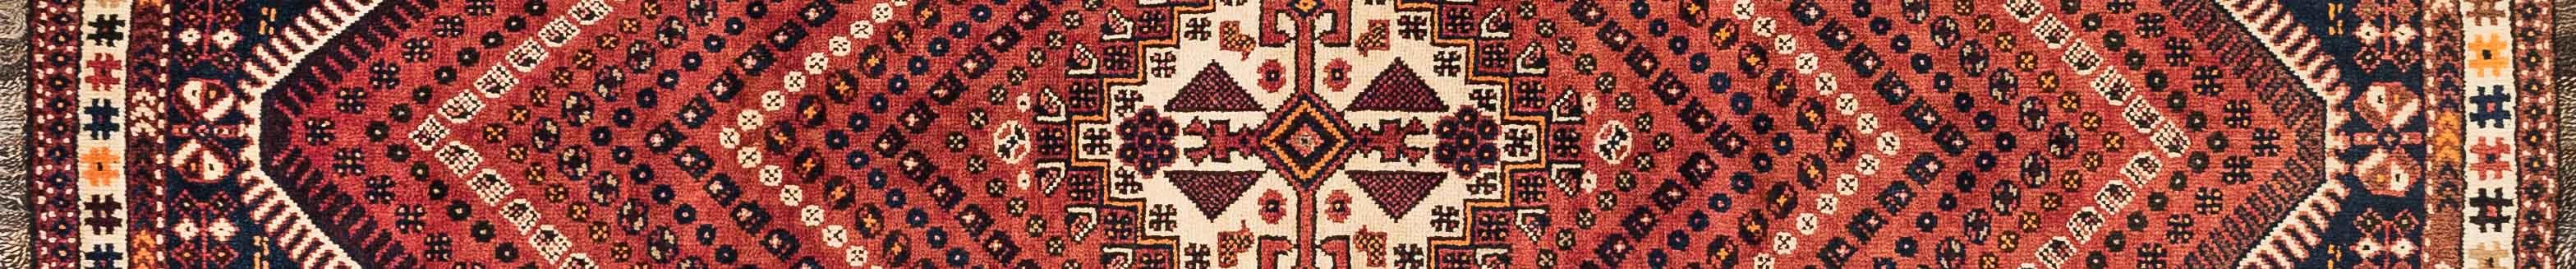 Shiraz Persian Carpet Rug N1Carpet Canada Montreal Tapis Persan 1450